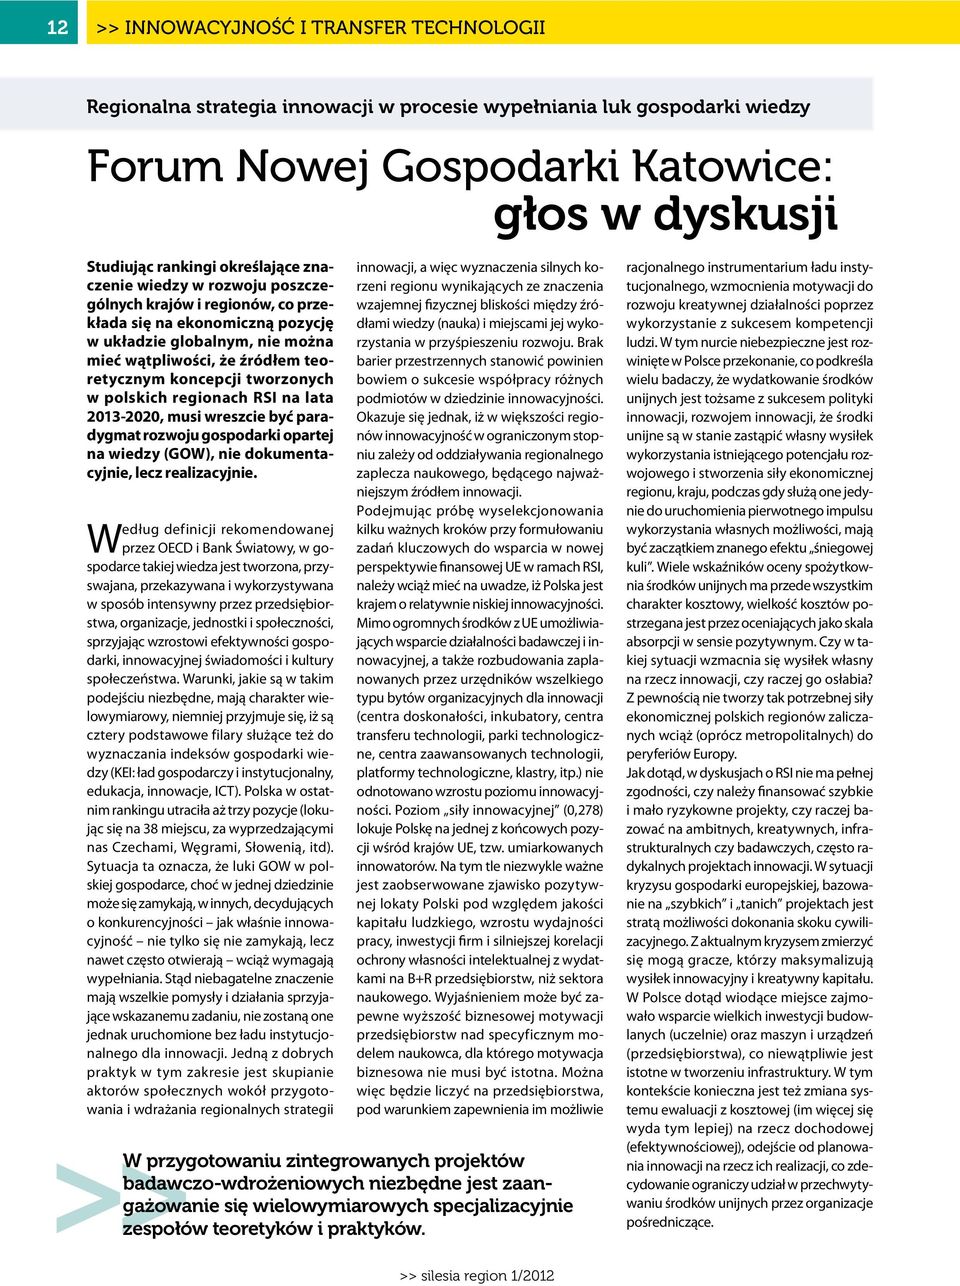 polskich regionach RSI na lata 2013-2020, musi wreszcie być paradygmat rozwoju gospodarki opartej na wiedzy (GOW), nie dokumentacyjnie, lecz realizacyjnie.